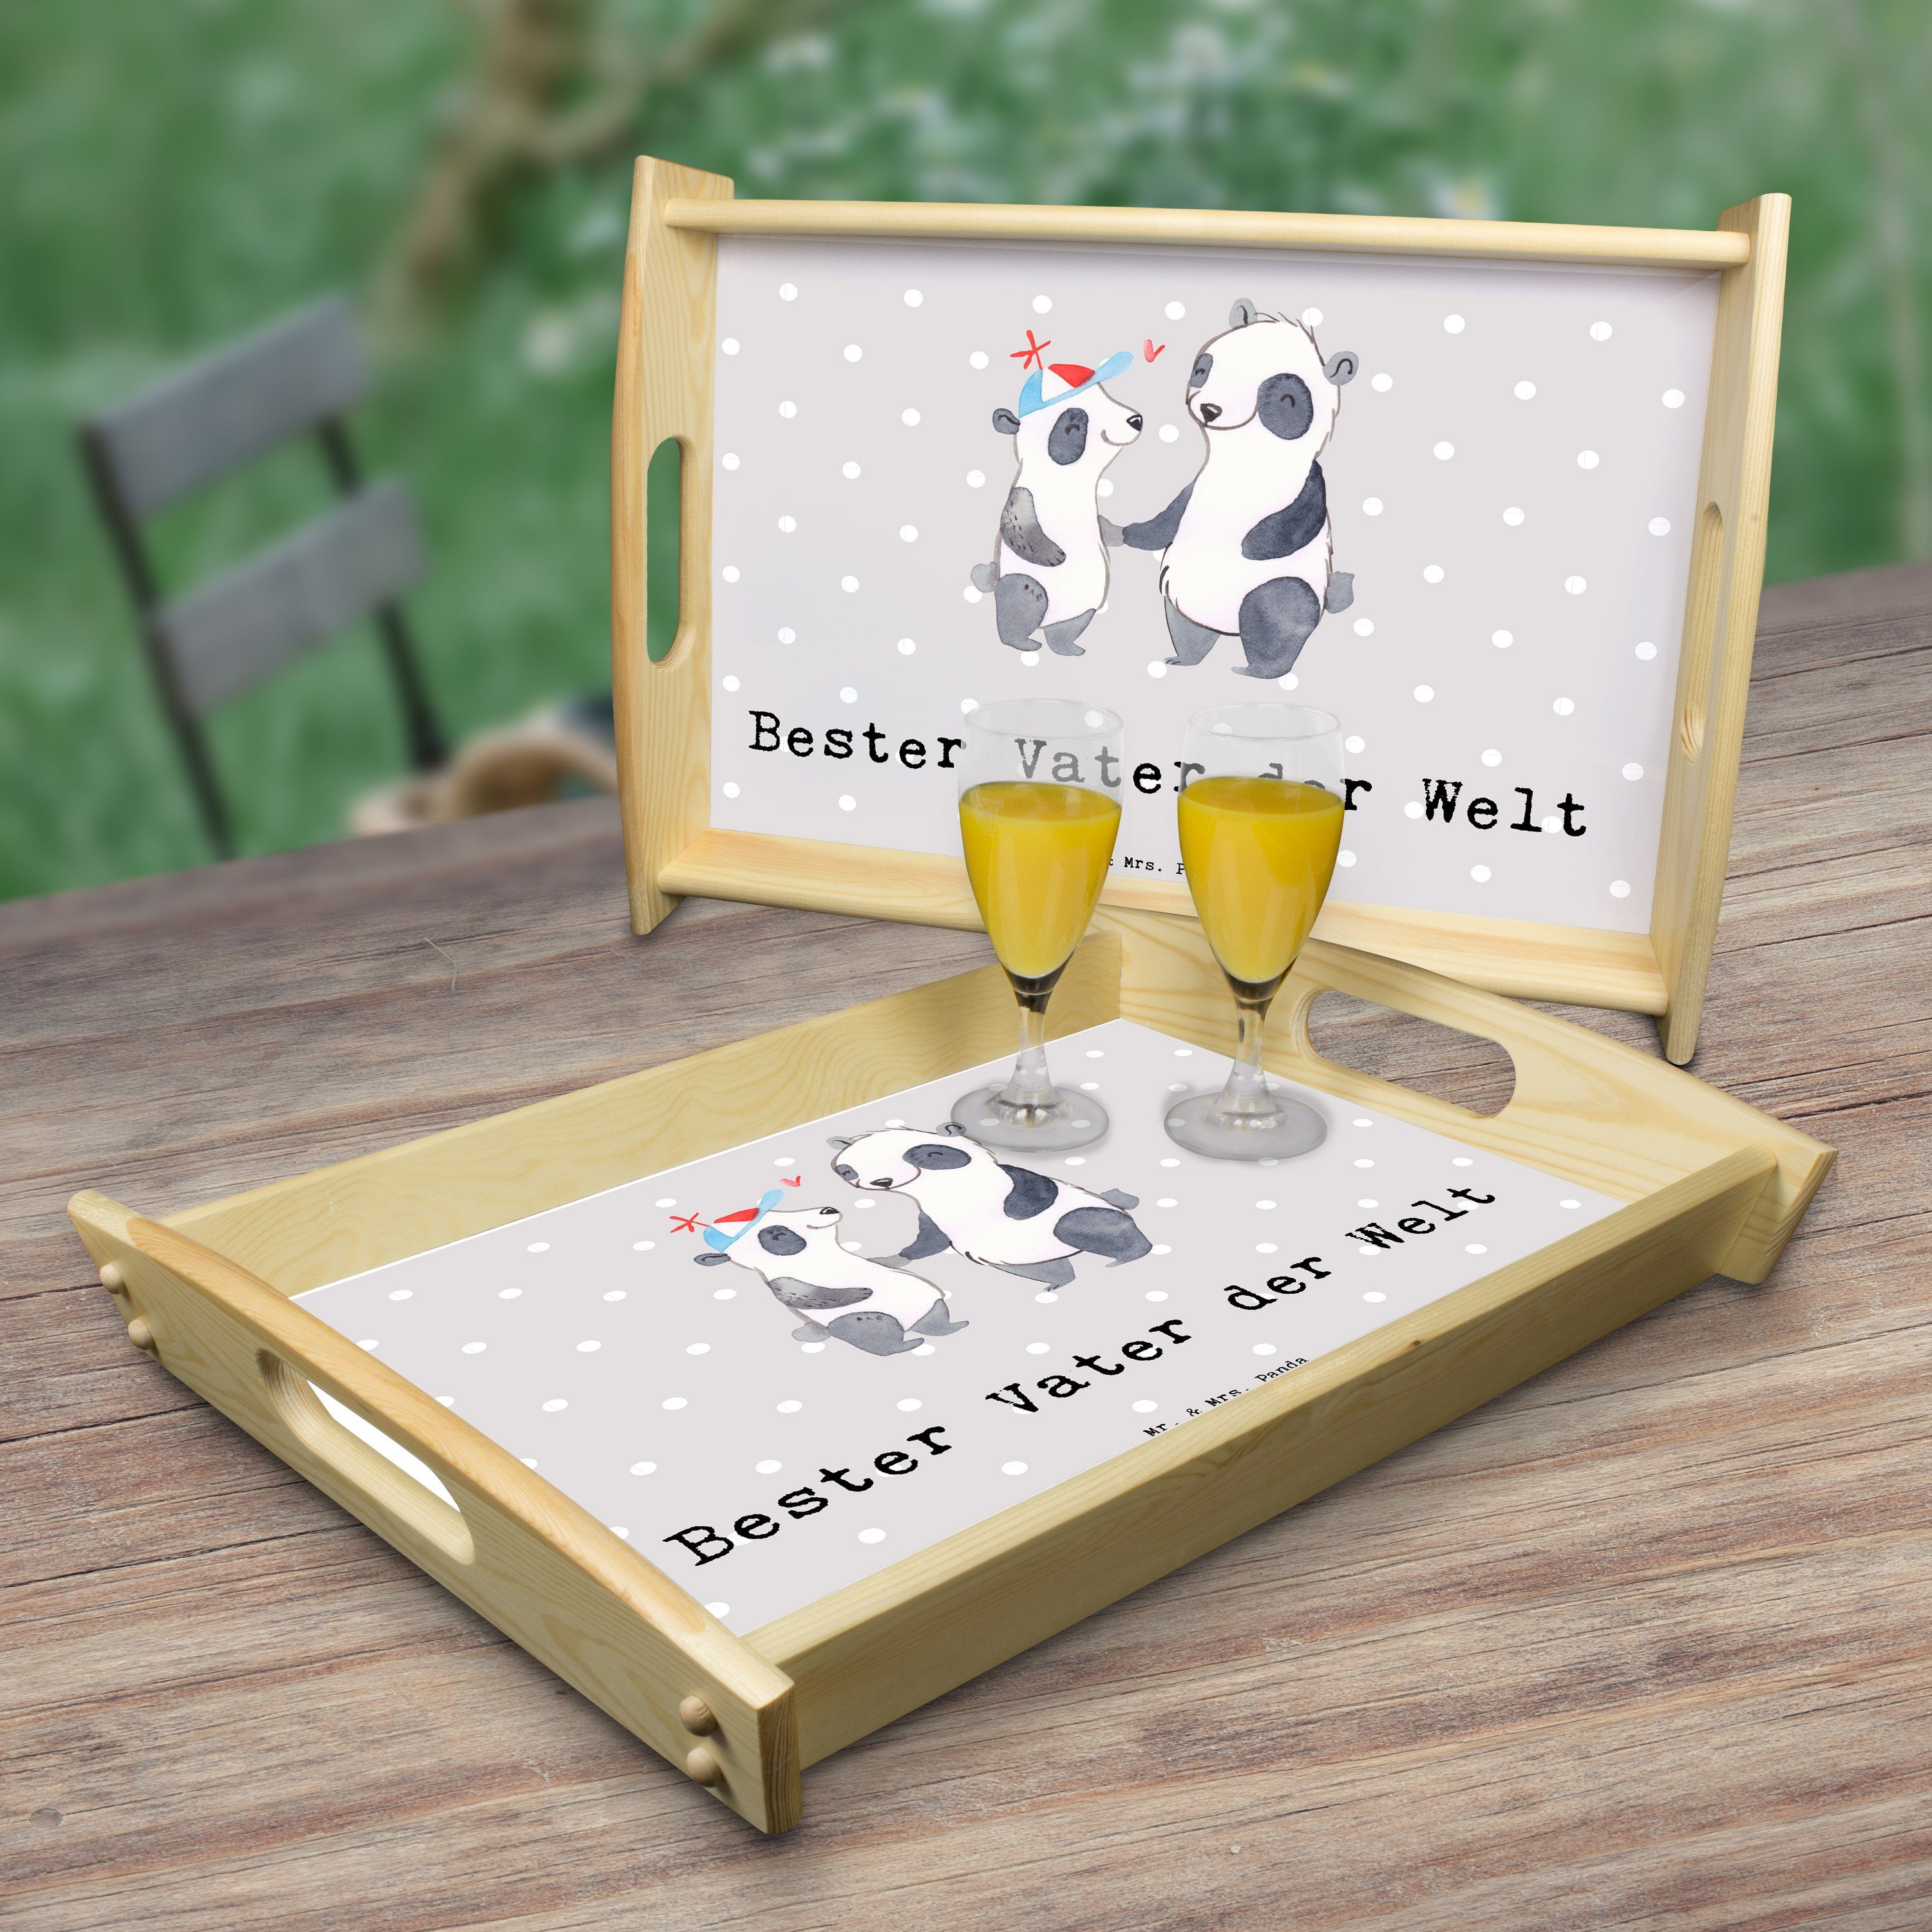 Mrs. & (1-tlg) lasiert, Tablett Pastell - Grau Geschenk, Echtholz Bester Mr. Dankeschön, Welt der Panda Kü, Vater Panda -